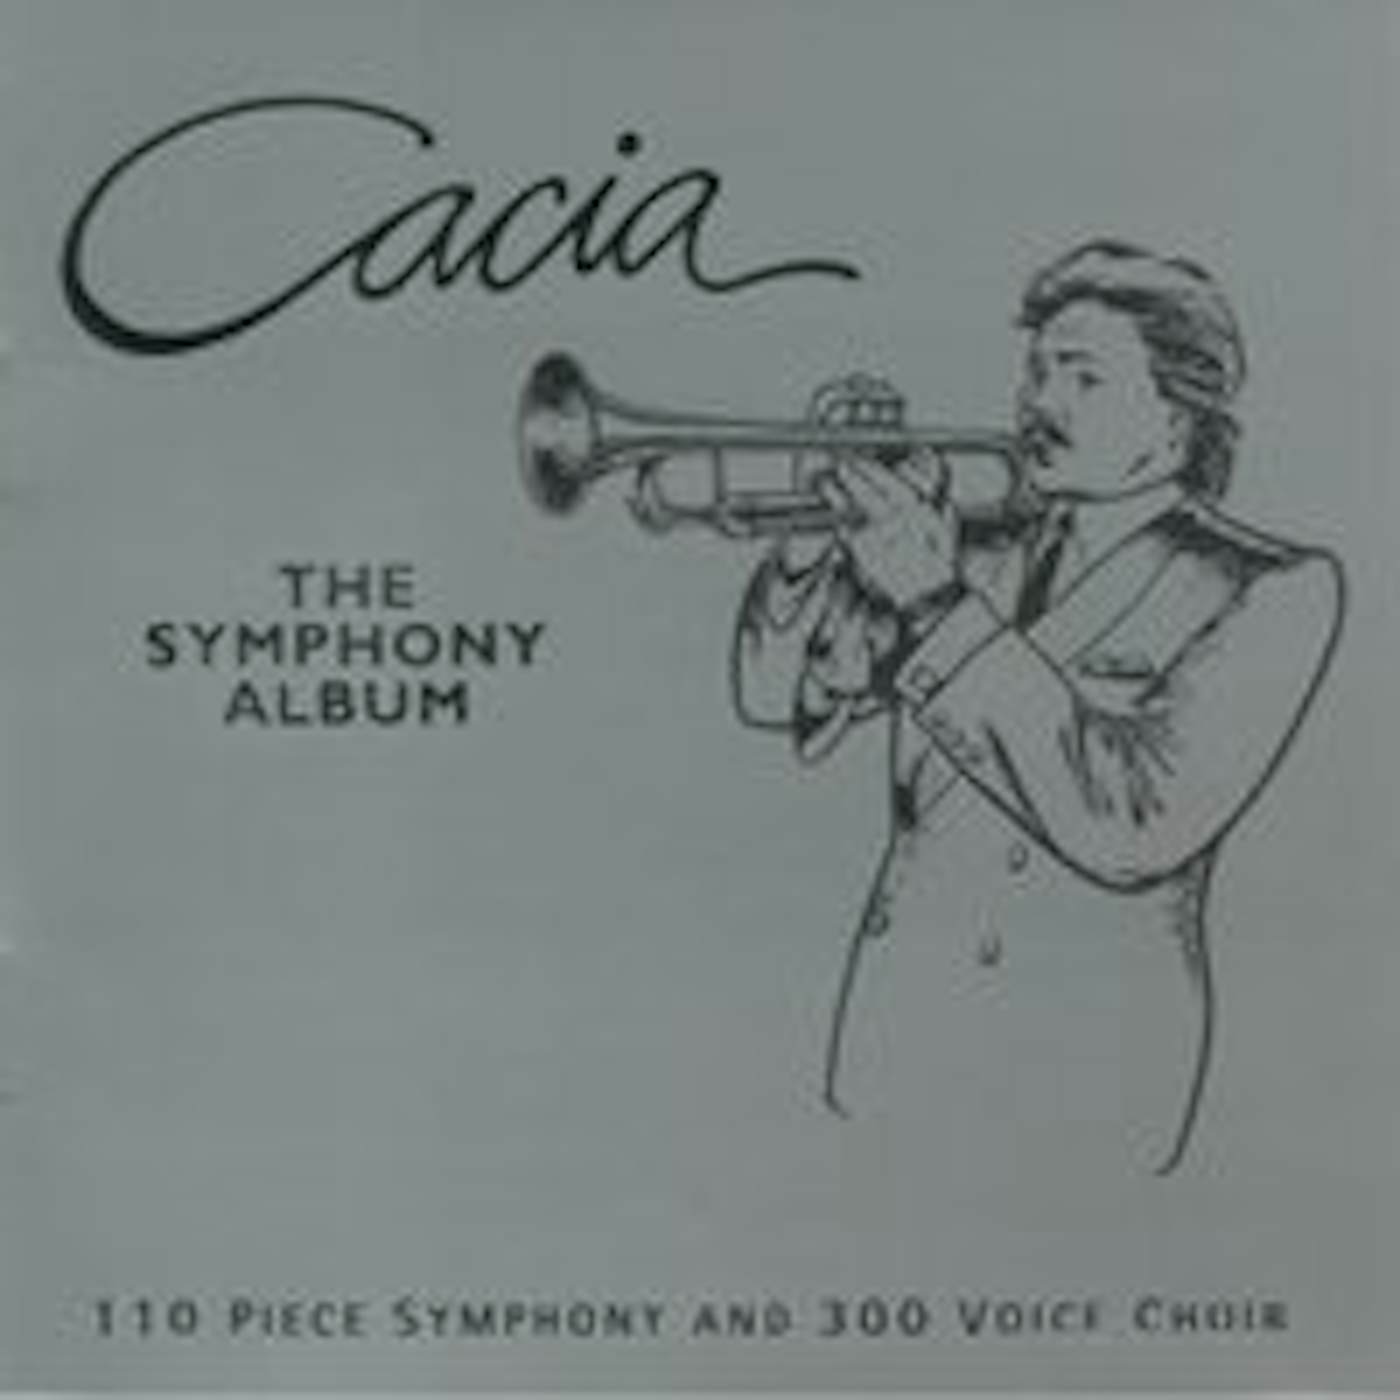 Paul Cacia CACIA THE SYMPHONY ALBUM CD